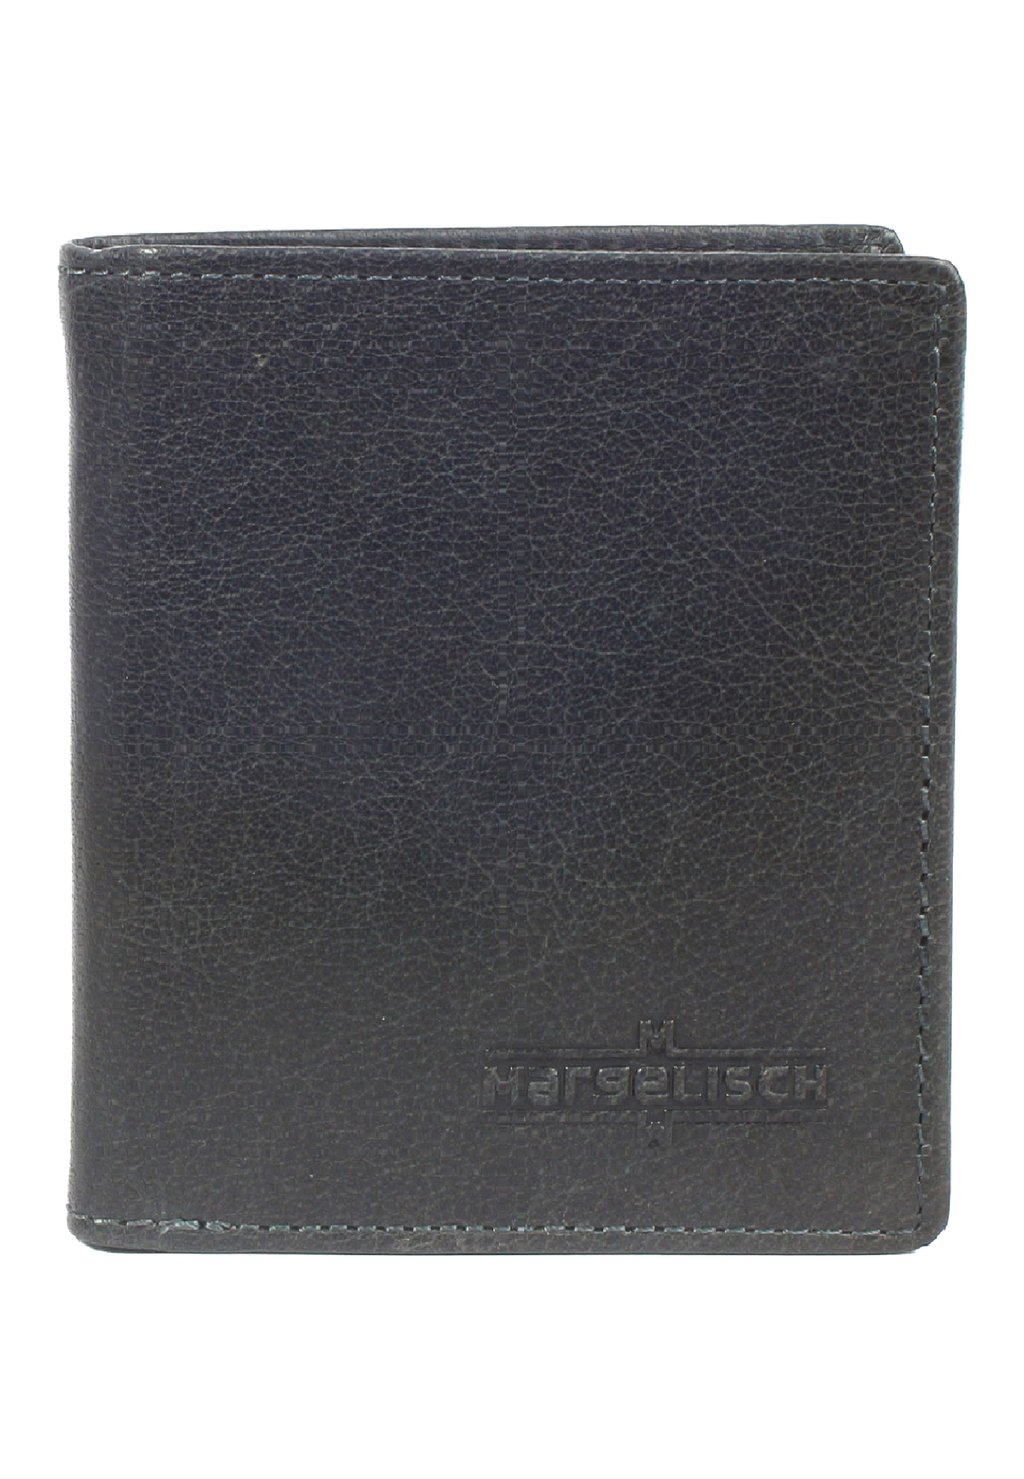 Кошелек RFID TOKYO Margelisch, цвет steel blue кошелек texas margelisch цвет black